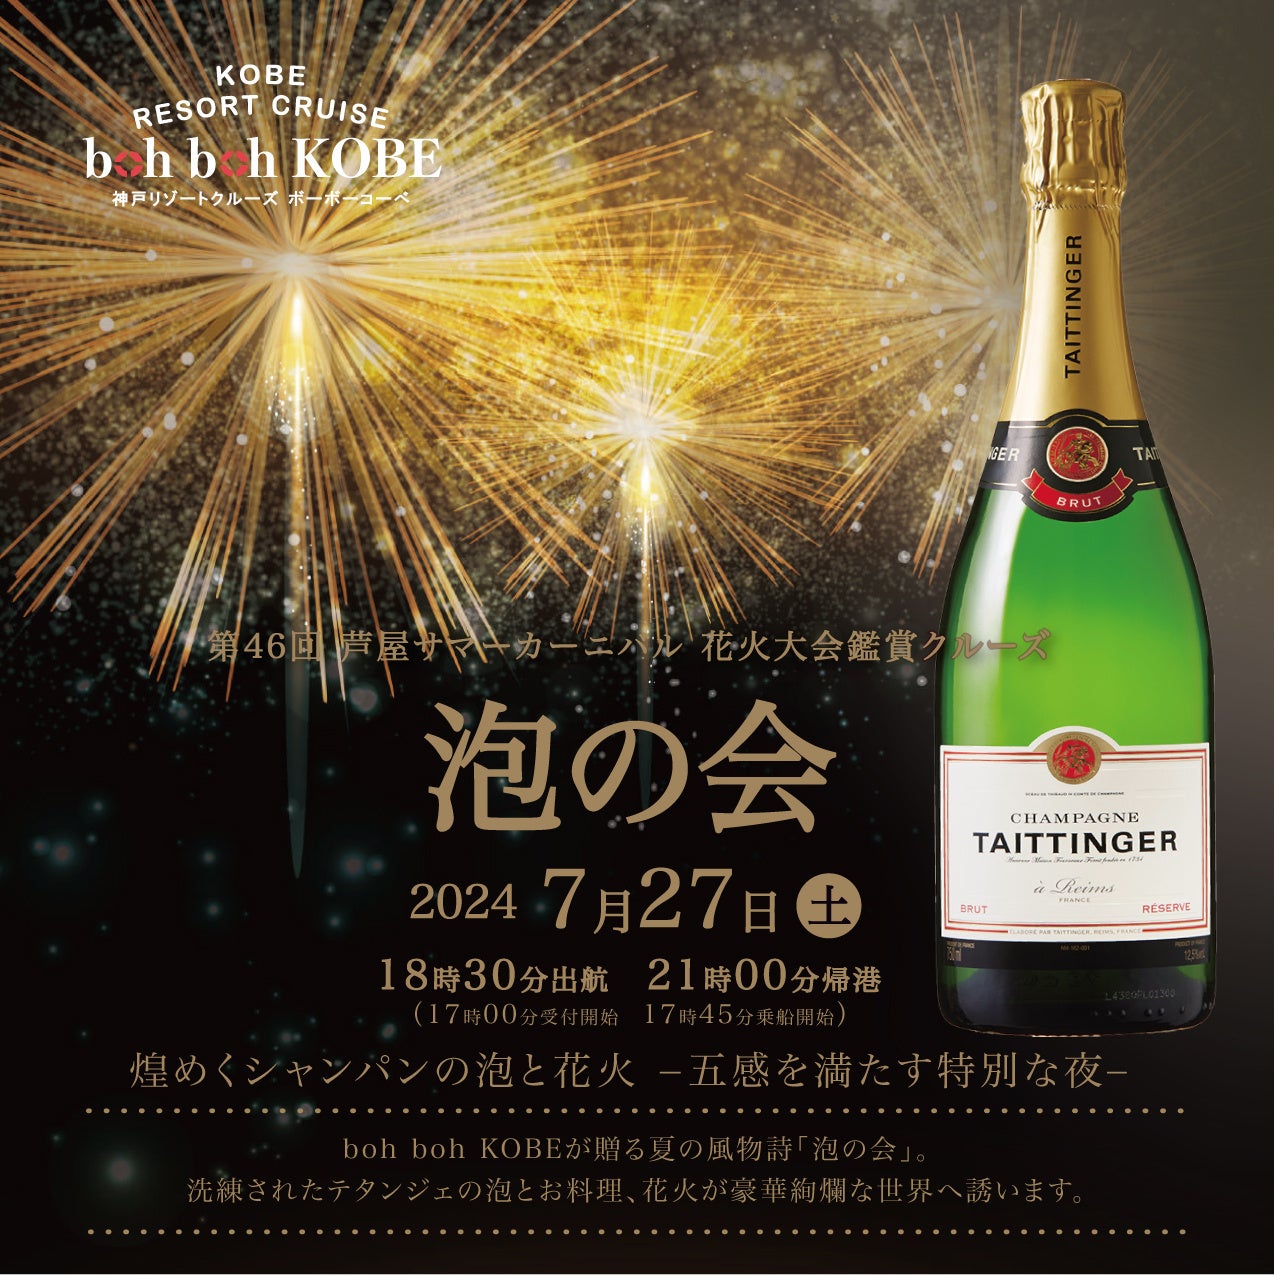 2024年7月27日（土）神戸の観光船boh boh KOBEにて高級シャンパン『テタンジェ』と花火を楽しむ『「泡の会 2024」～煌めくシャンパンの泡と花火　五感を満たす特別な夜～』を開催